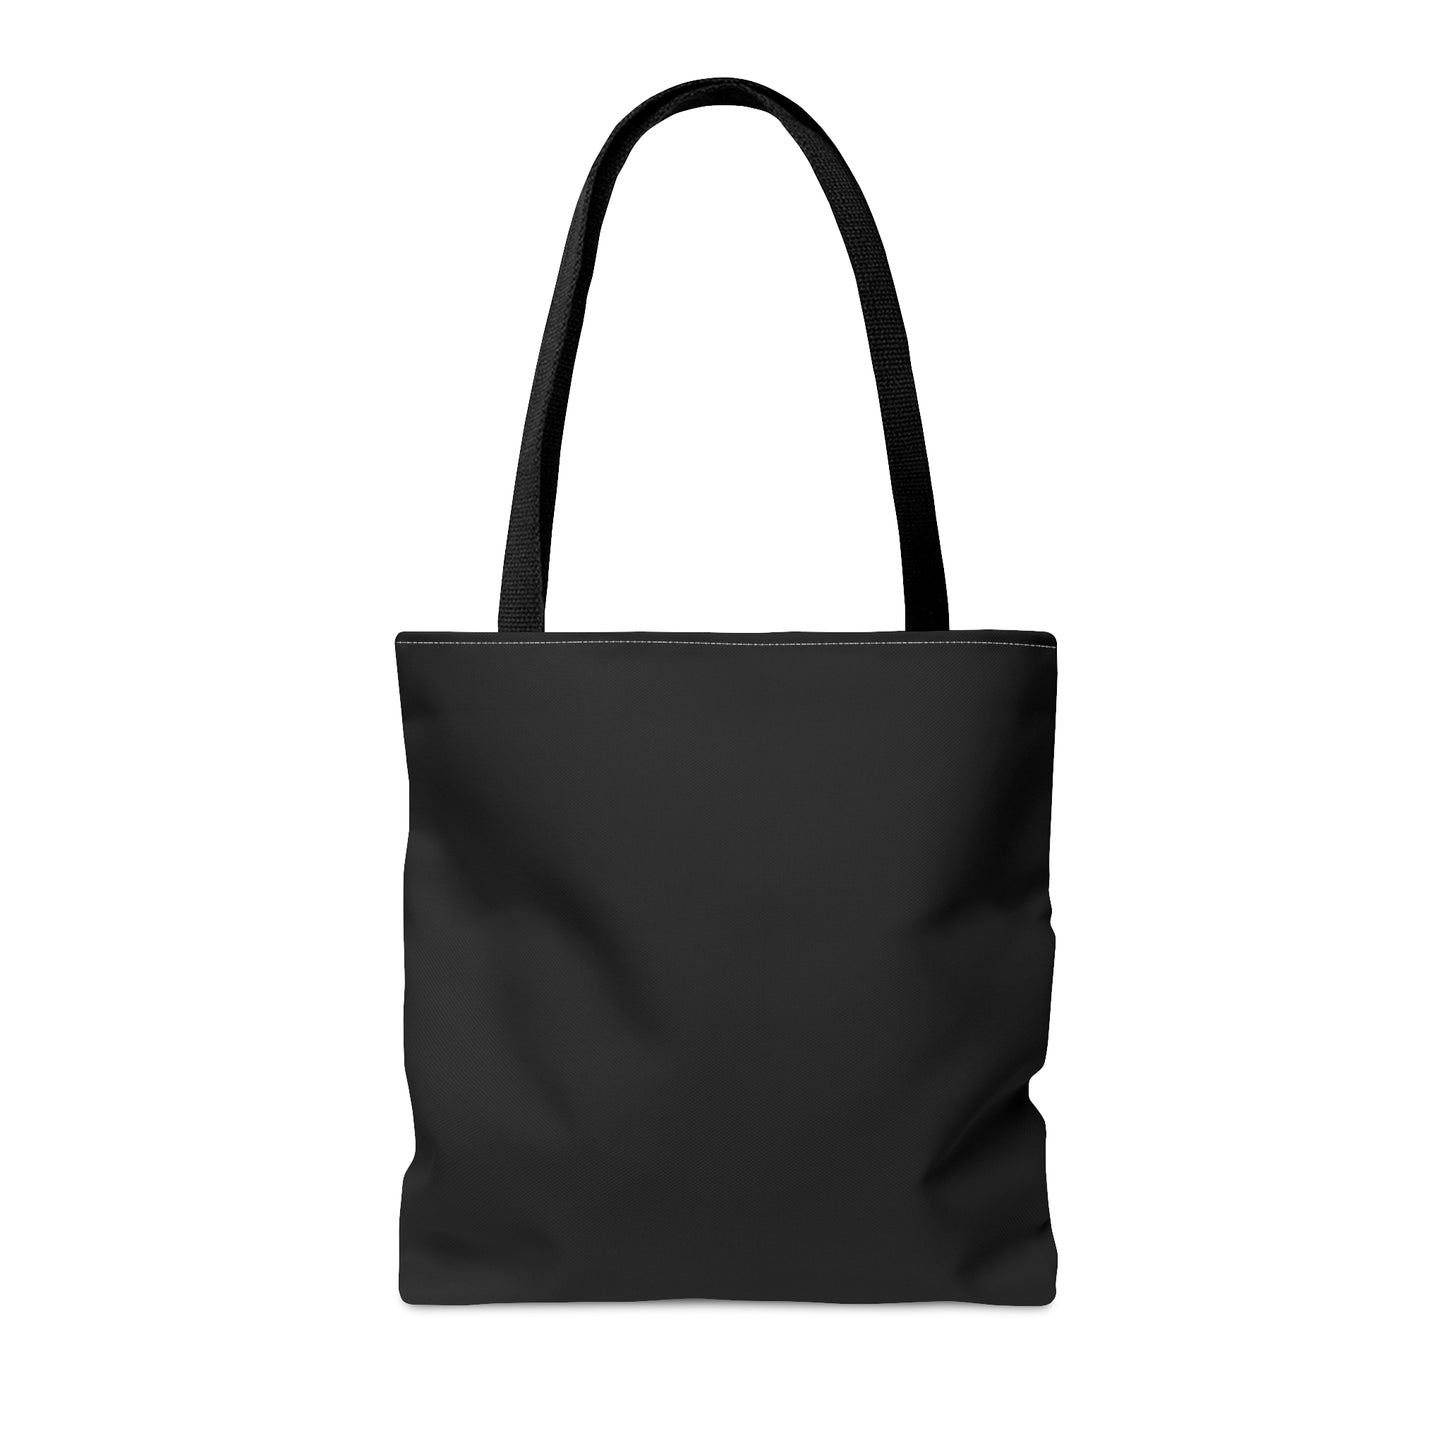 Valentine Bluffs Tote Bag (Black)